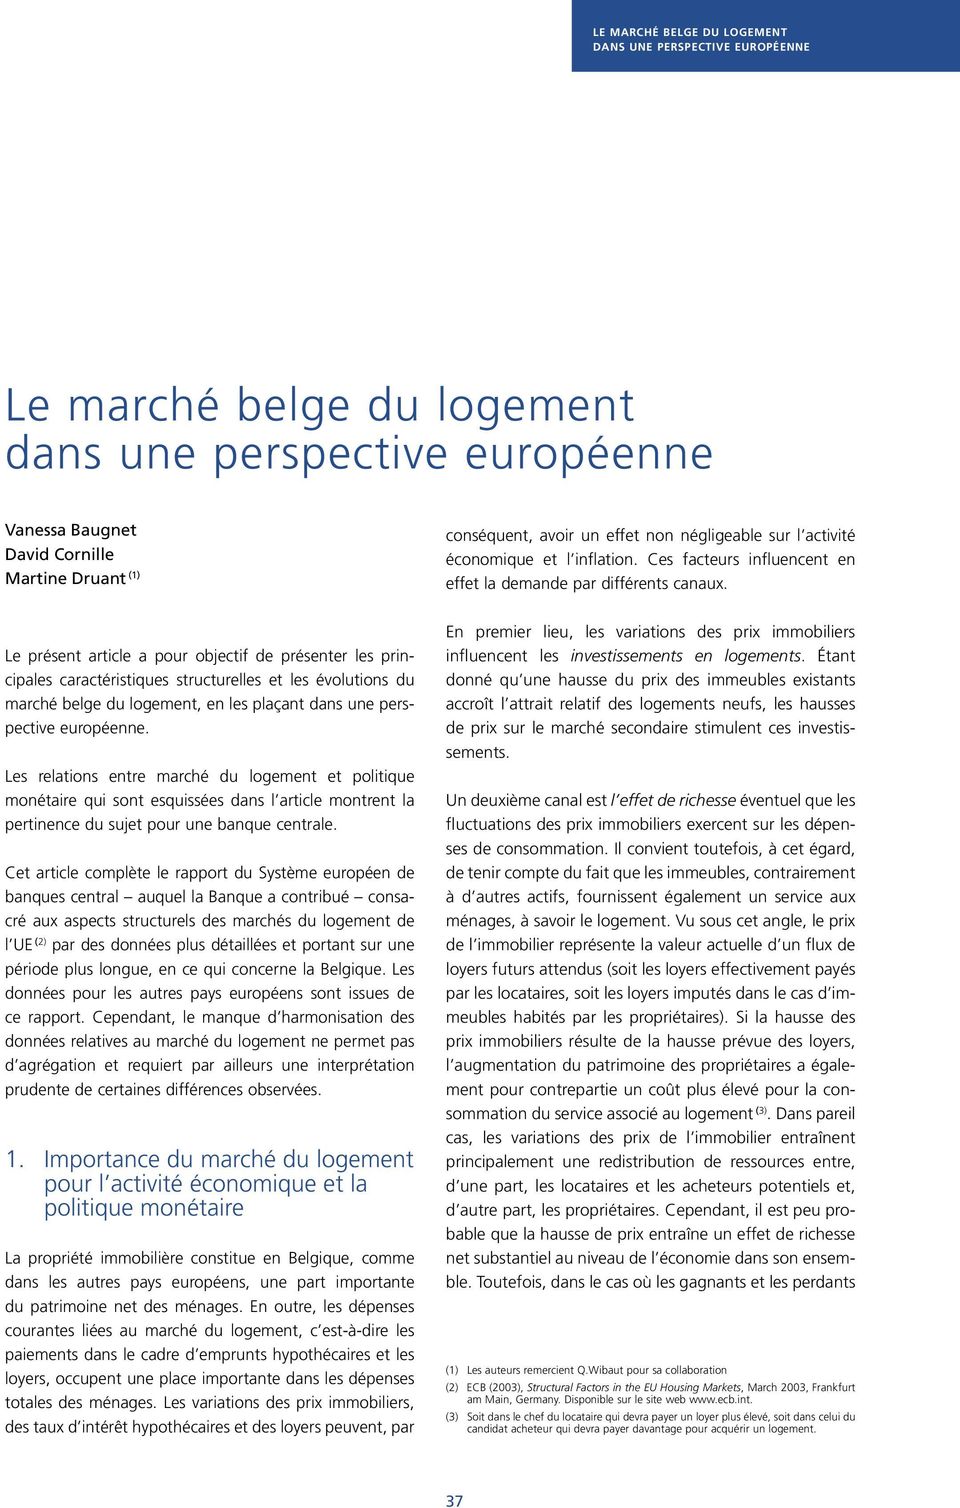 Le présent article a pour objectif de présenter les principales caractéristiques structurelles et les évolutions du marché belge du logement, en les plaçant dans une perspective européenne.